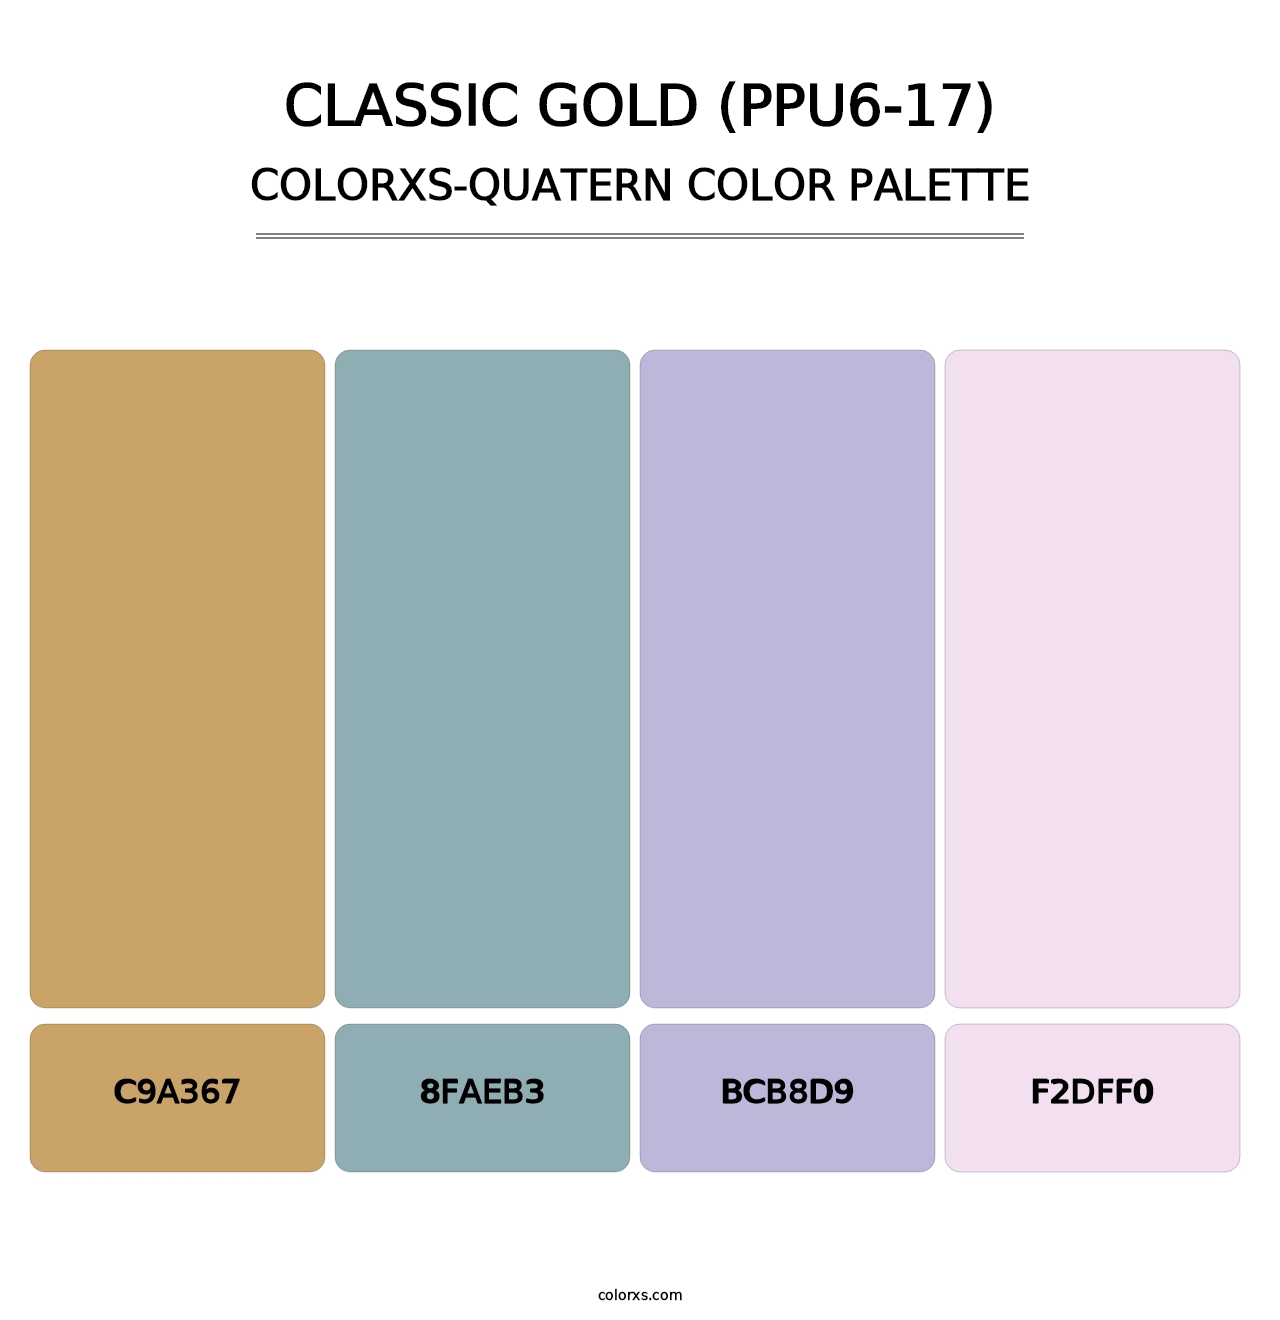 Classic Gold (PPU6-17) - Colorxs Quatern Palette